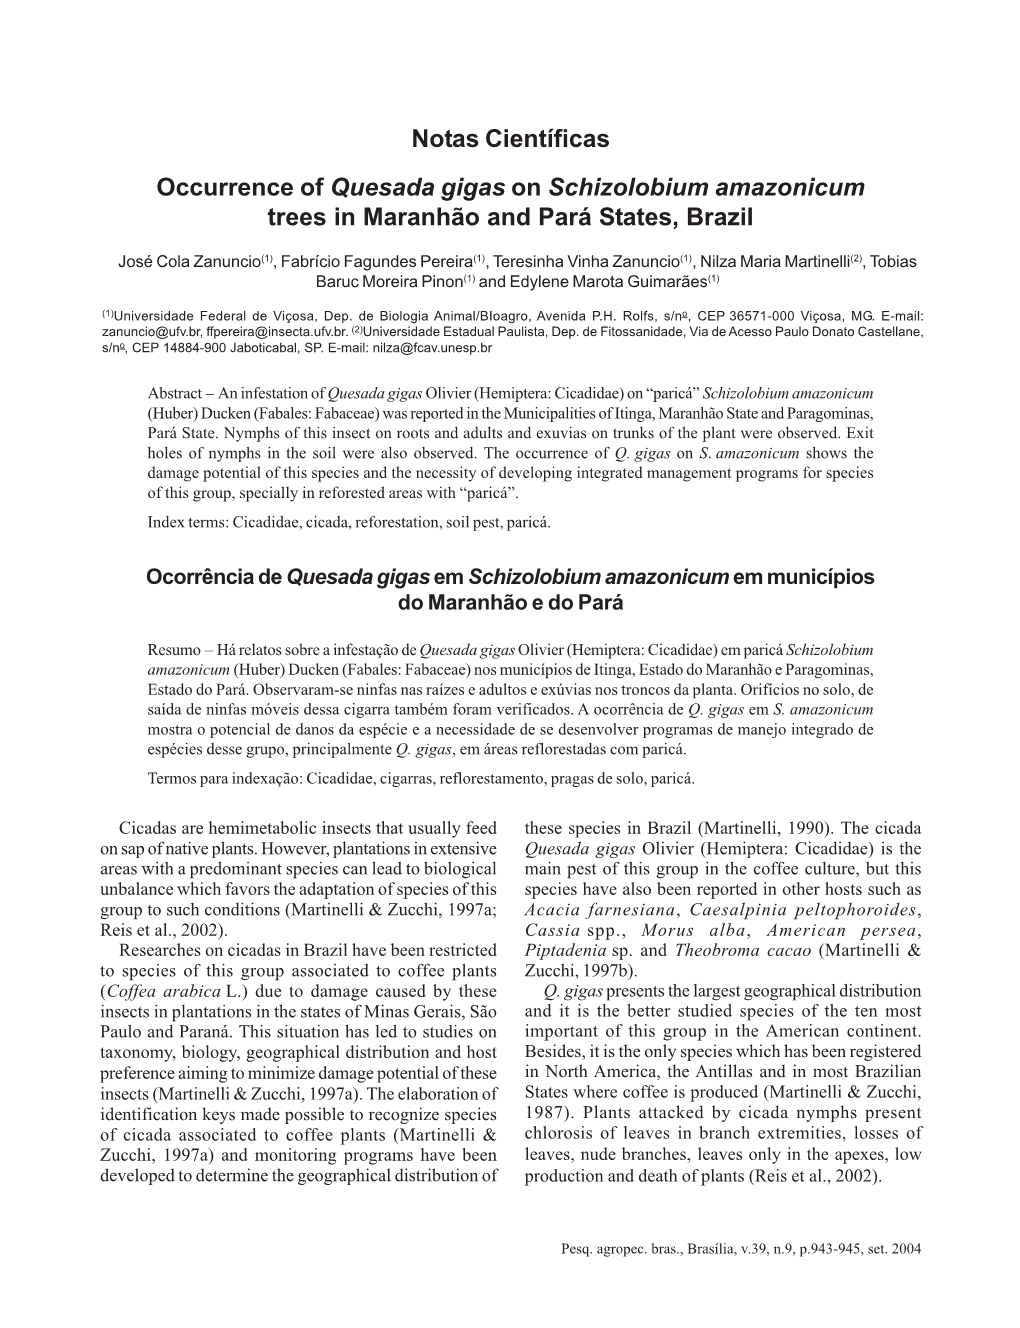 Notas Científicas Occurrence of Quesada Gigas on Schizolobium Amazonicum Trees in Maranhão and Pará States, Brazil